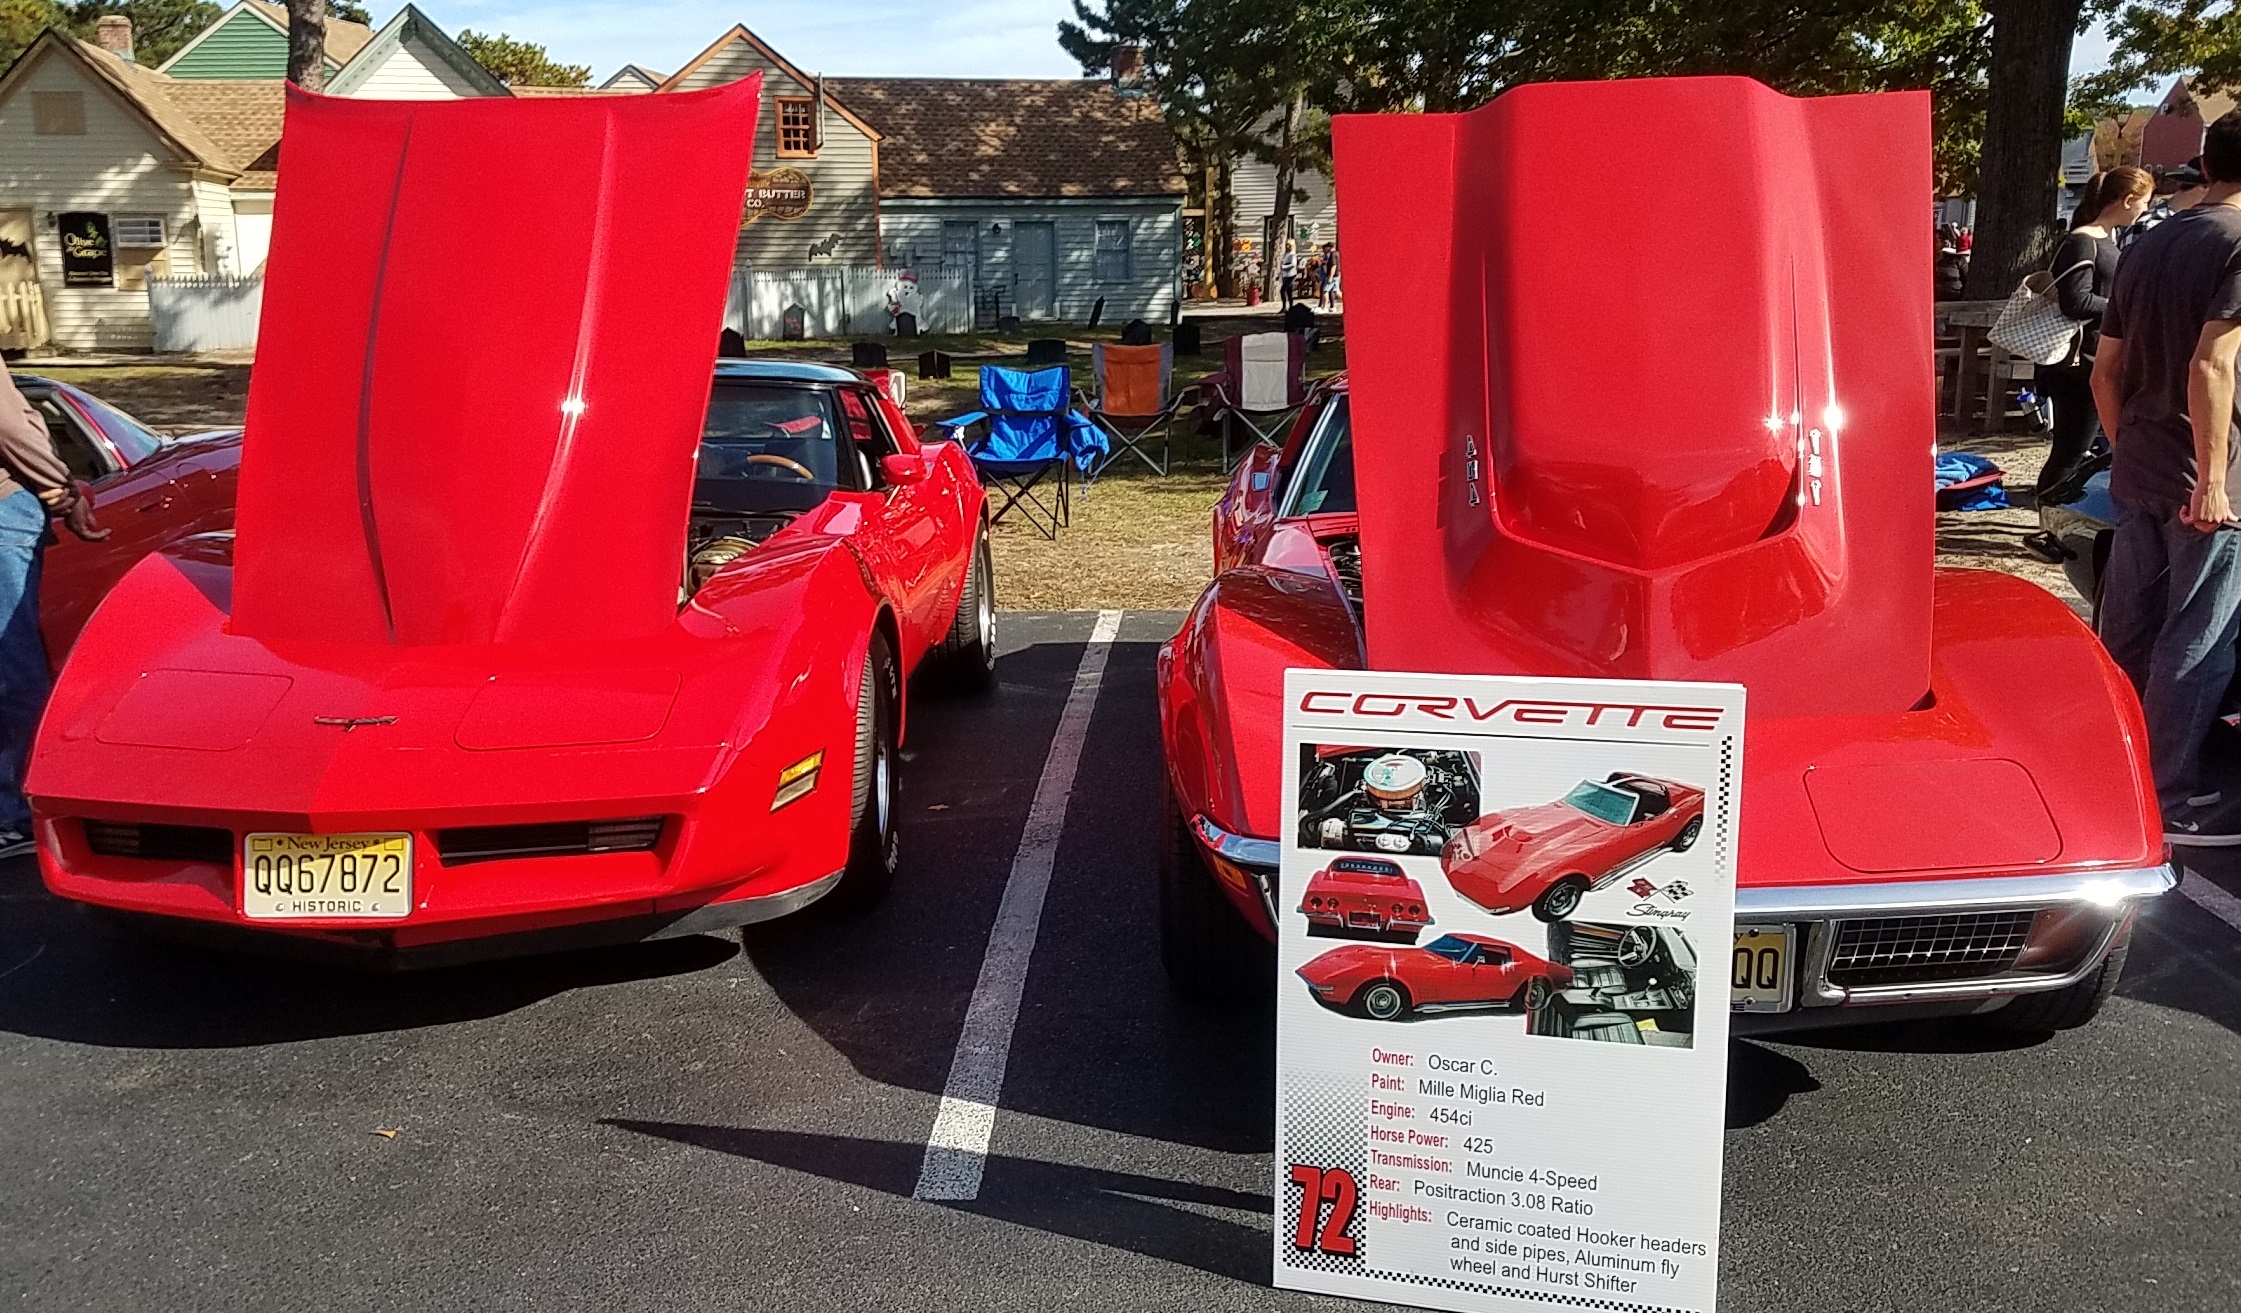 Nice Corvette show in Smithville CorvetteForum Chevrolet Corvette